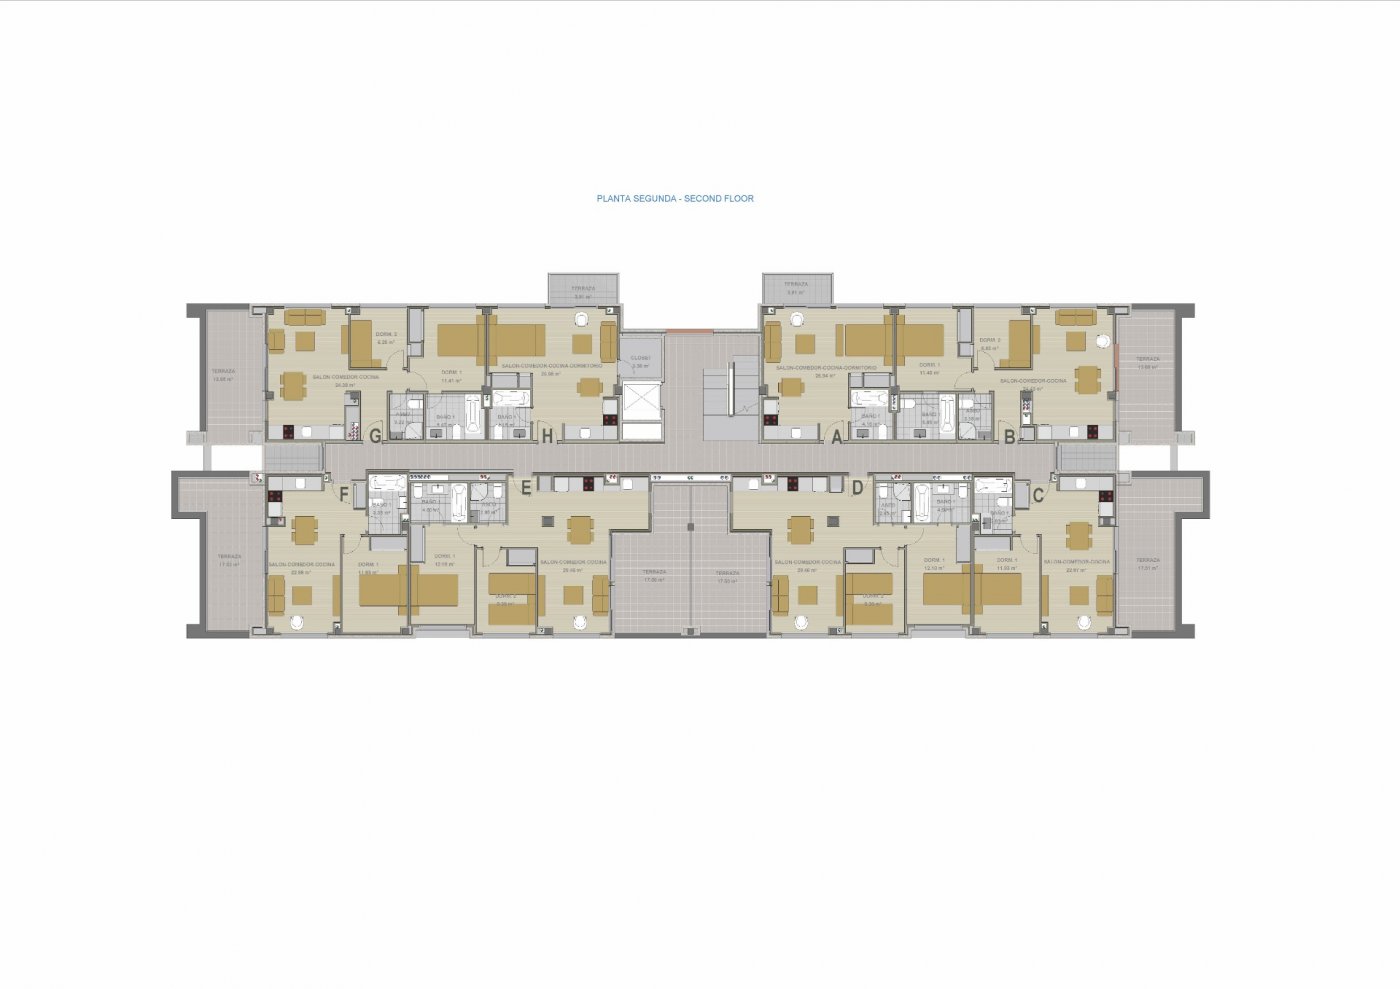 Apartamento Obra nueva 2 dormitorios, piscina, parking y trastero a 400 m playa en Denia (Alicante)